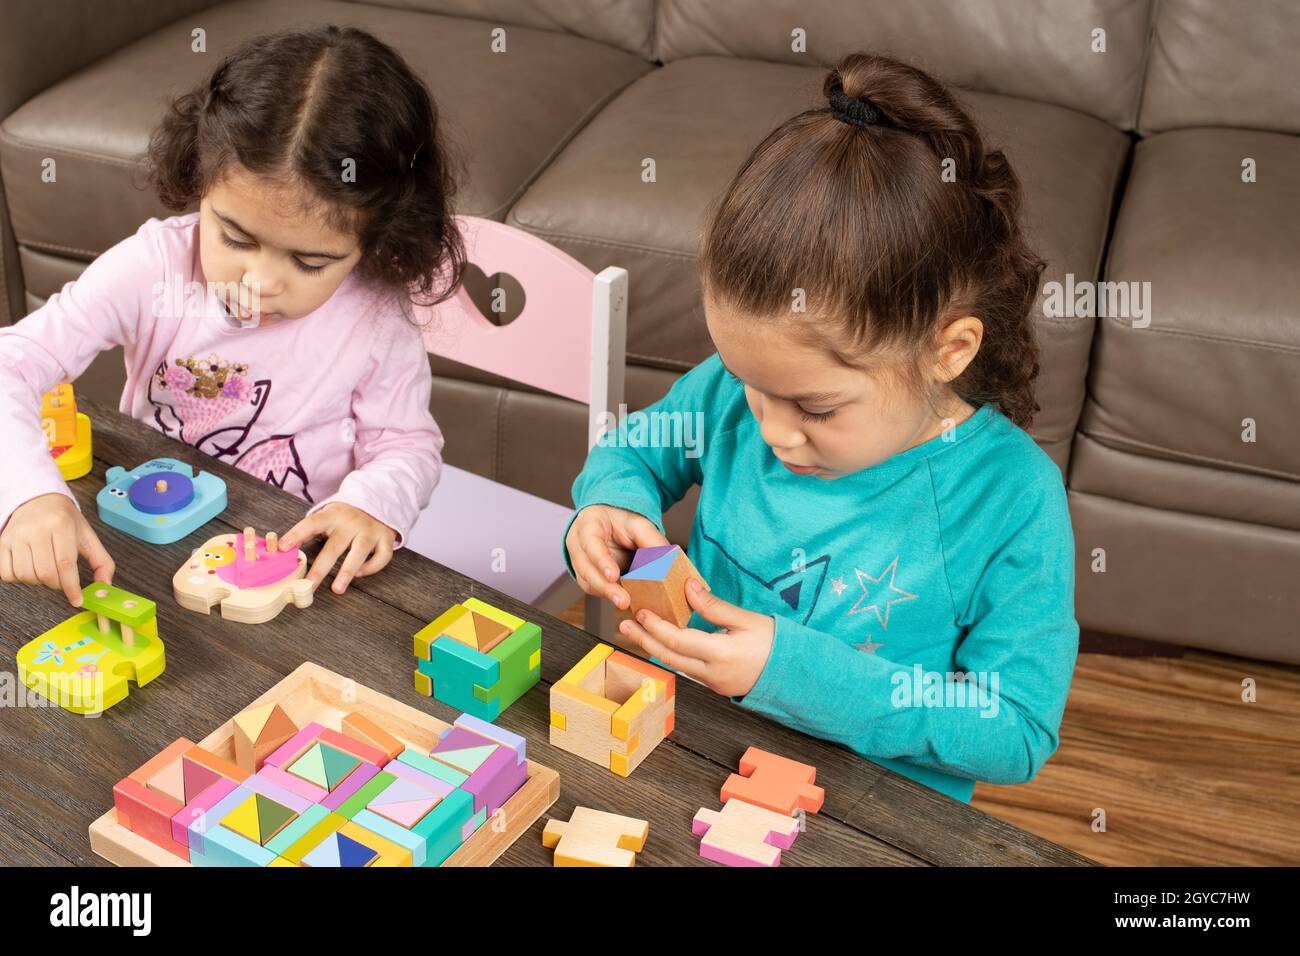 Une jeune fille de cinq ans travaille sur des formes géométriques complexes tandis que sa sœur de trois ans joue à côté d'elle avec des formes géométriques plus simples puzzle Banque D'Images